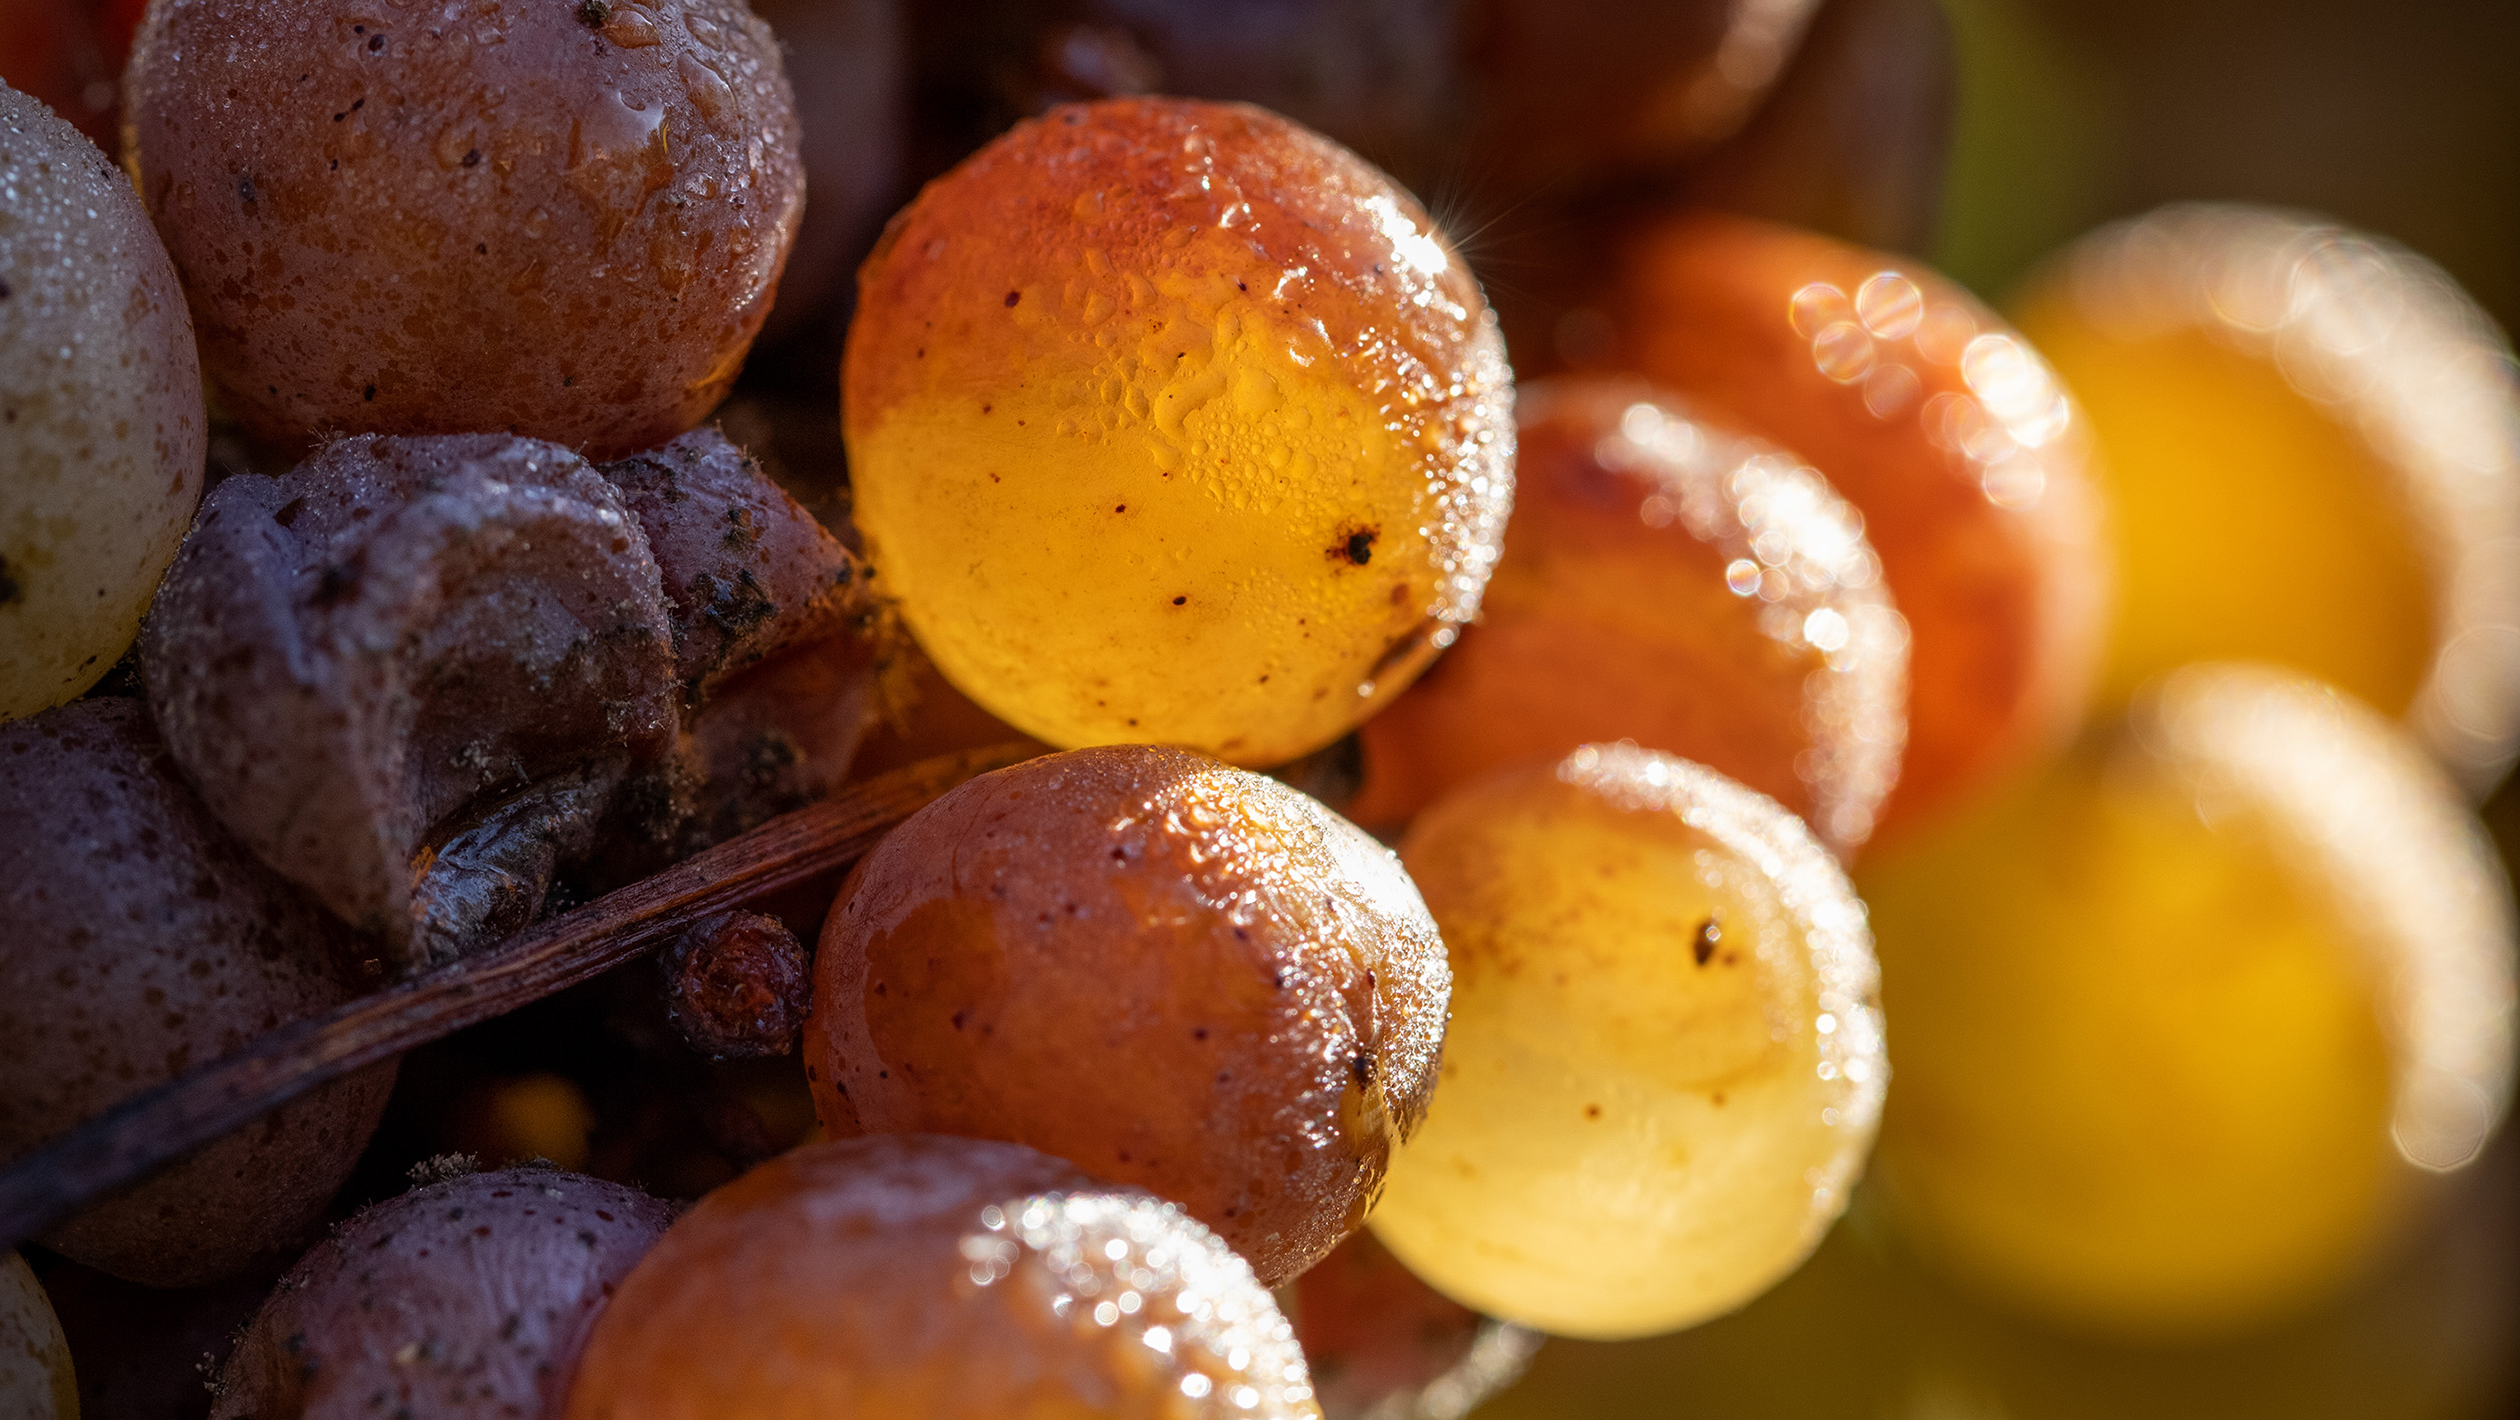 A close up of Sauternes grapes